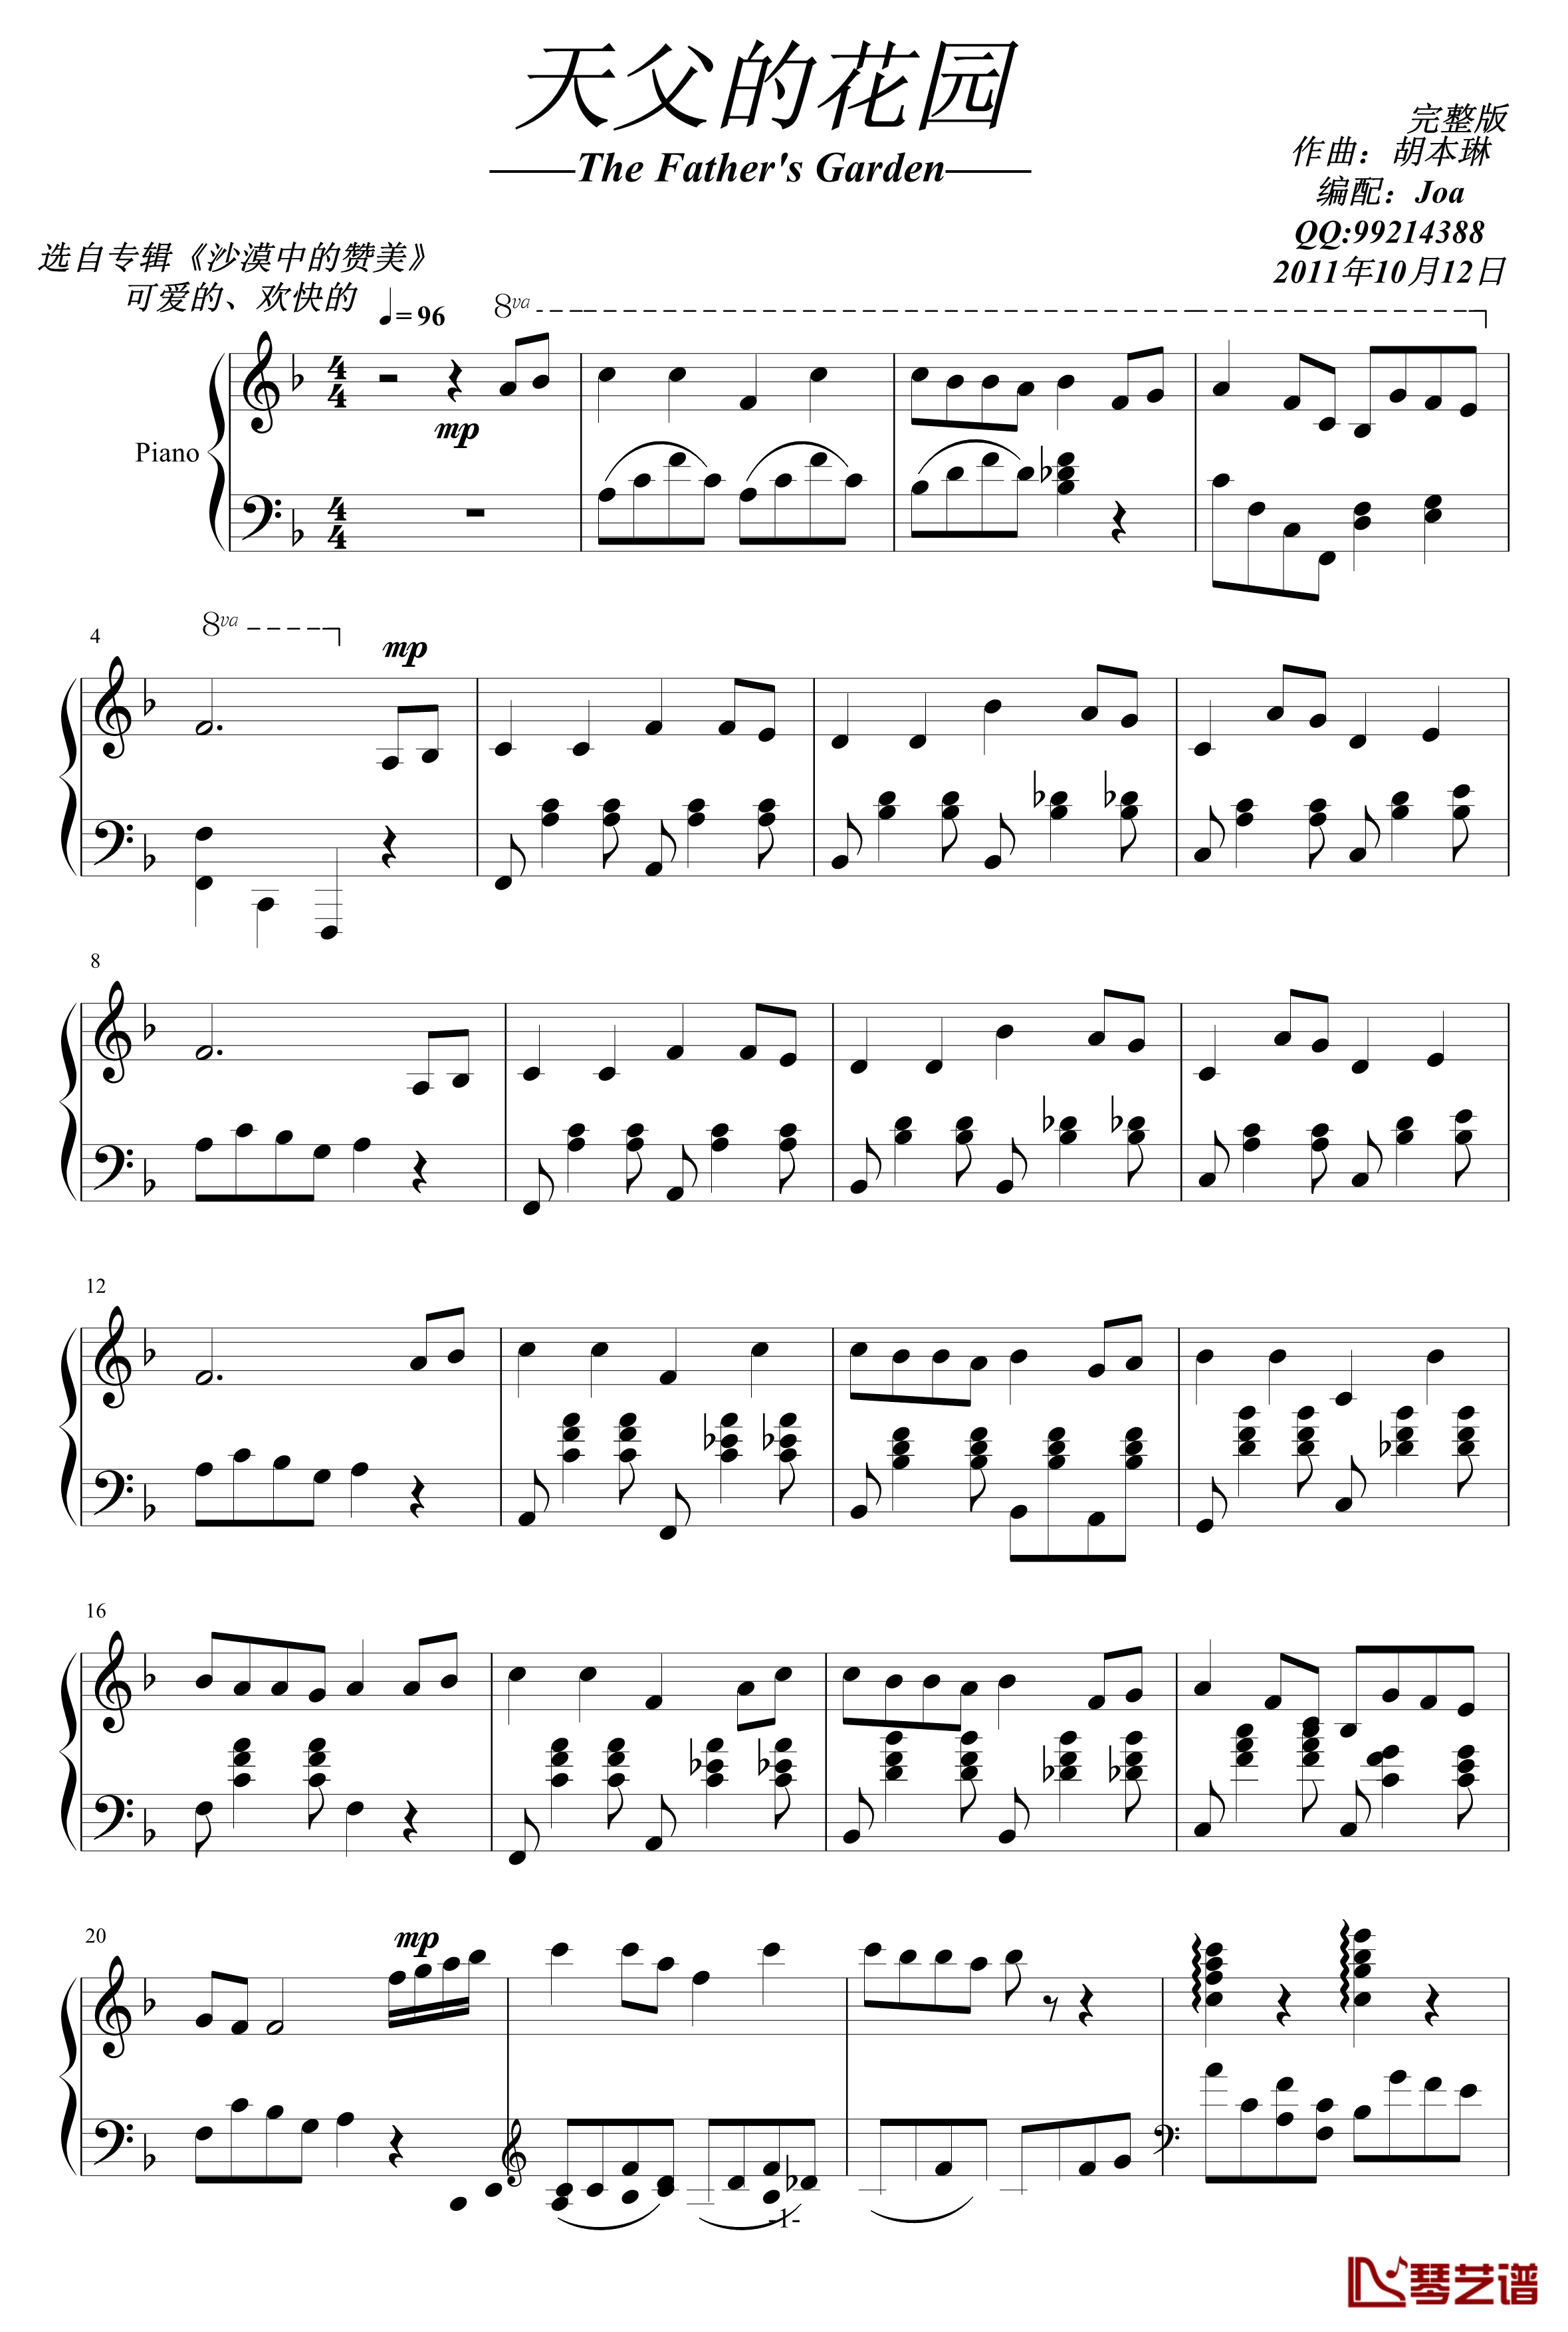 天父的花园钢琴谱-完整版-耶酥1